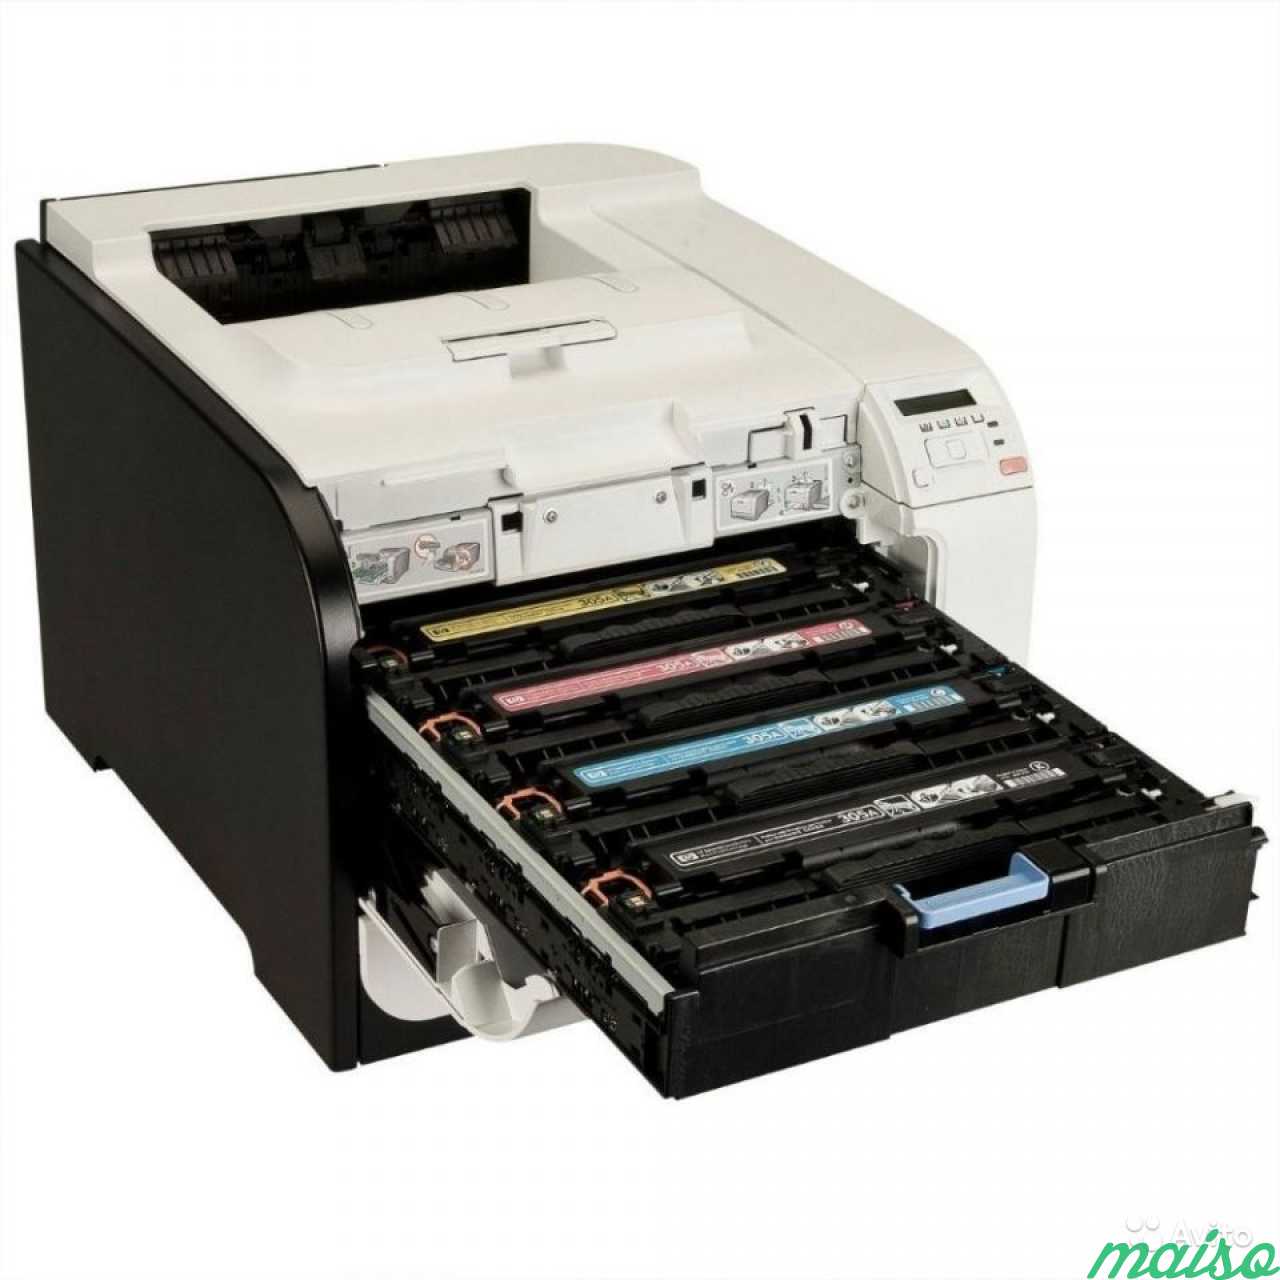 Принтер цветной HP LaserJet Pro 400 Color M451DN в Санкт-Петербурге. Фото 3